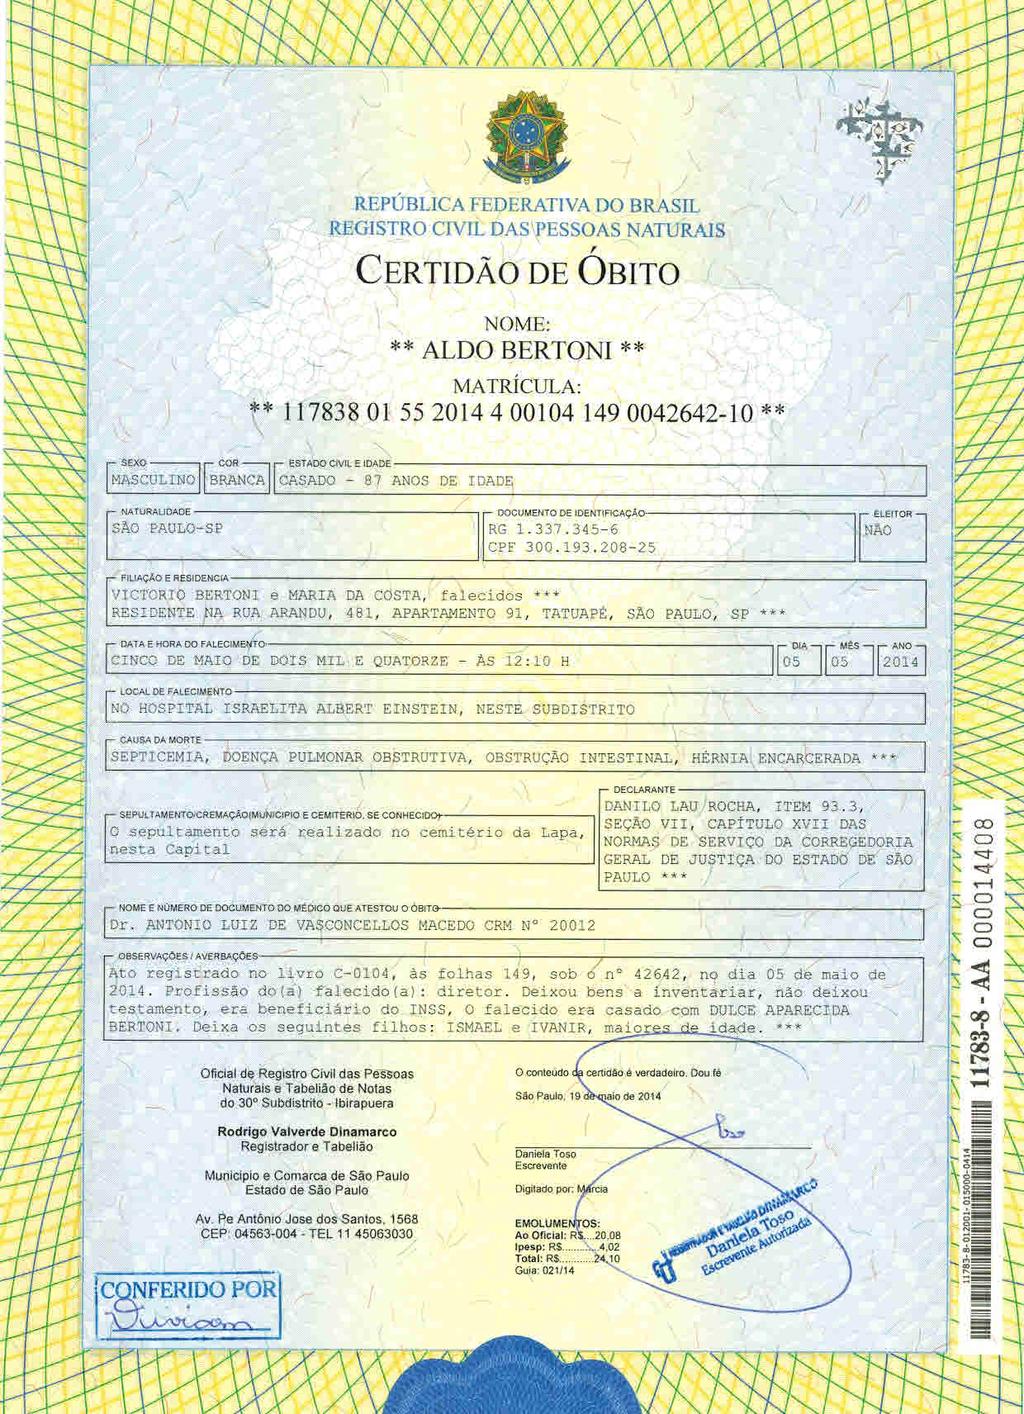 fls. 12 Este documento é cópia do original, assinado digitalmente por CECILIA SILVEIRA GONCALVES e Tribunal de Justica Sao Paulo, protocolado em 18/08/2014 às 16:11, sob o número